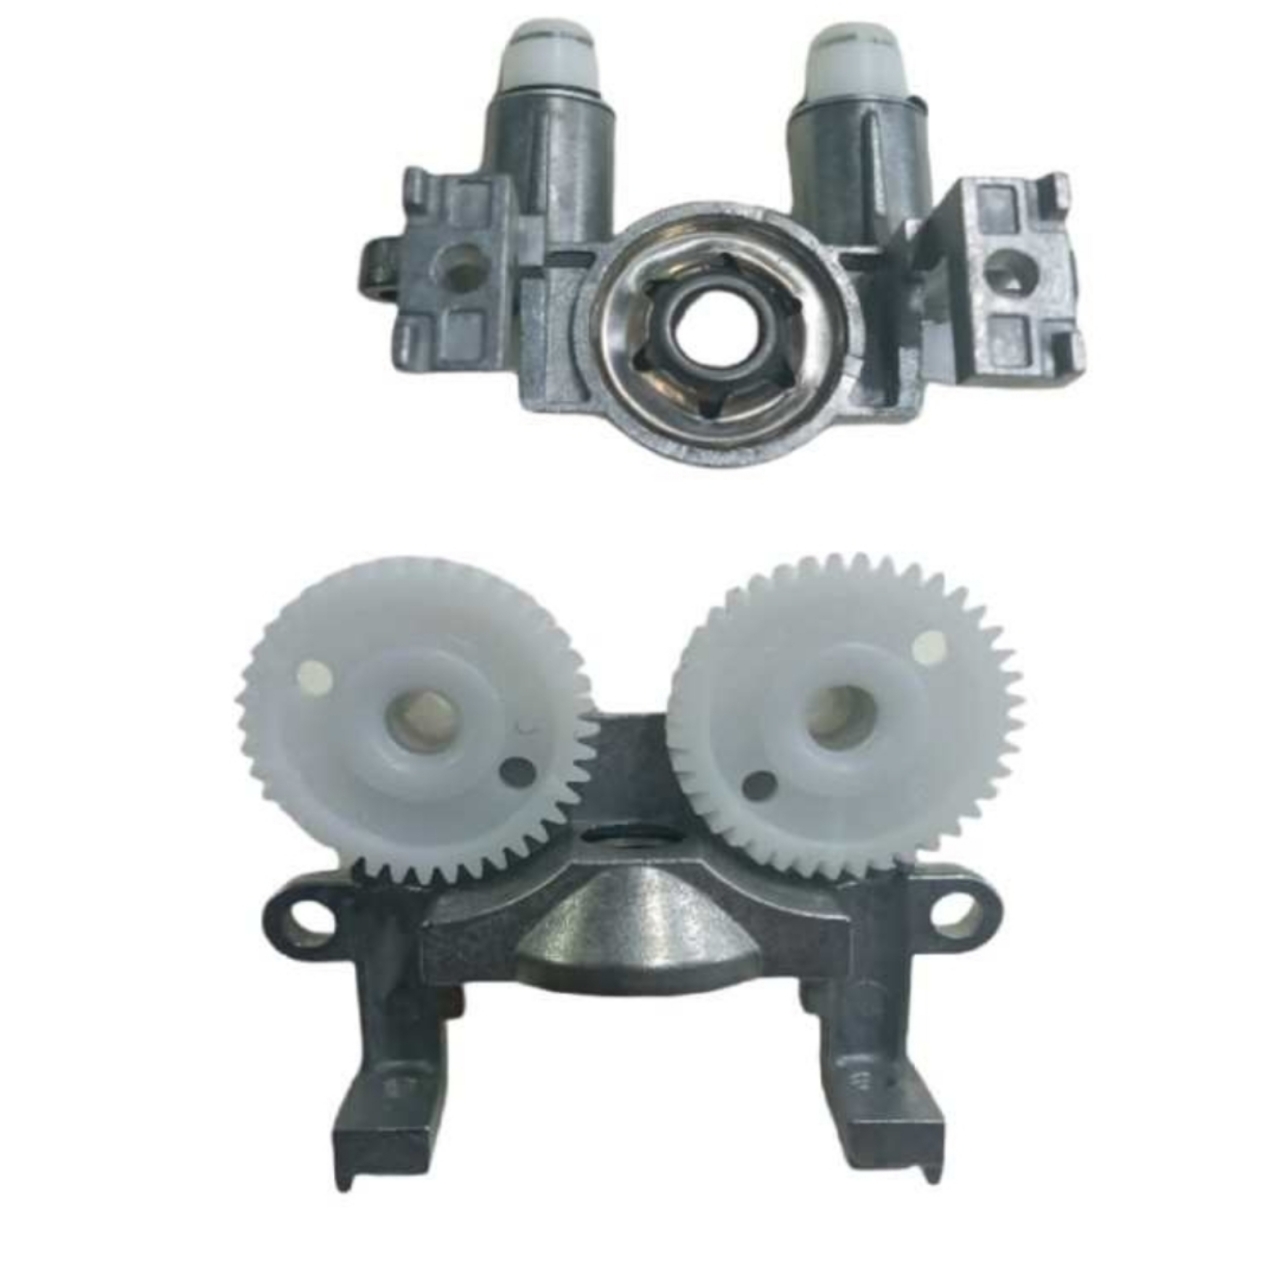 قاب بدنه موتور همزن به همراه چرخ دنده بدنه فلزی موتور همزن به همراه چرخ دنده ها اصل فابریکی